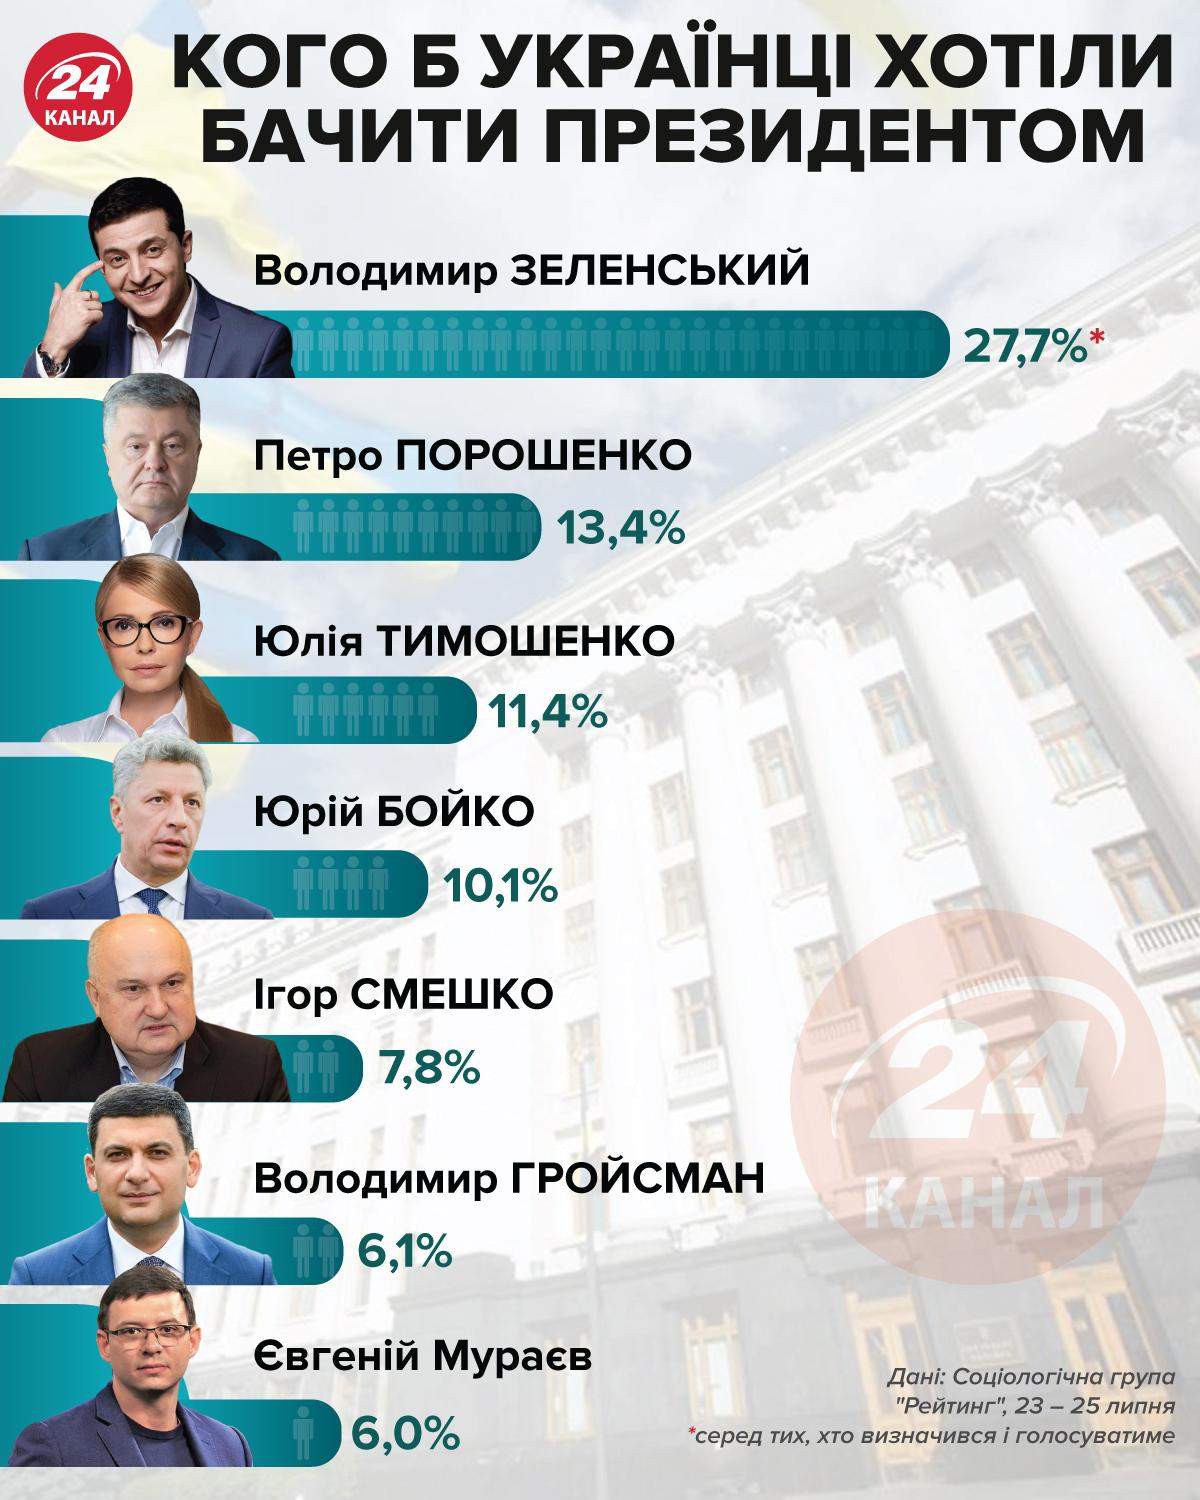 Кого українці хотіли б бачити президентом / Інфографіка 24 каналу